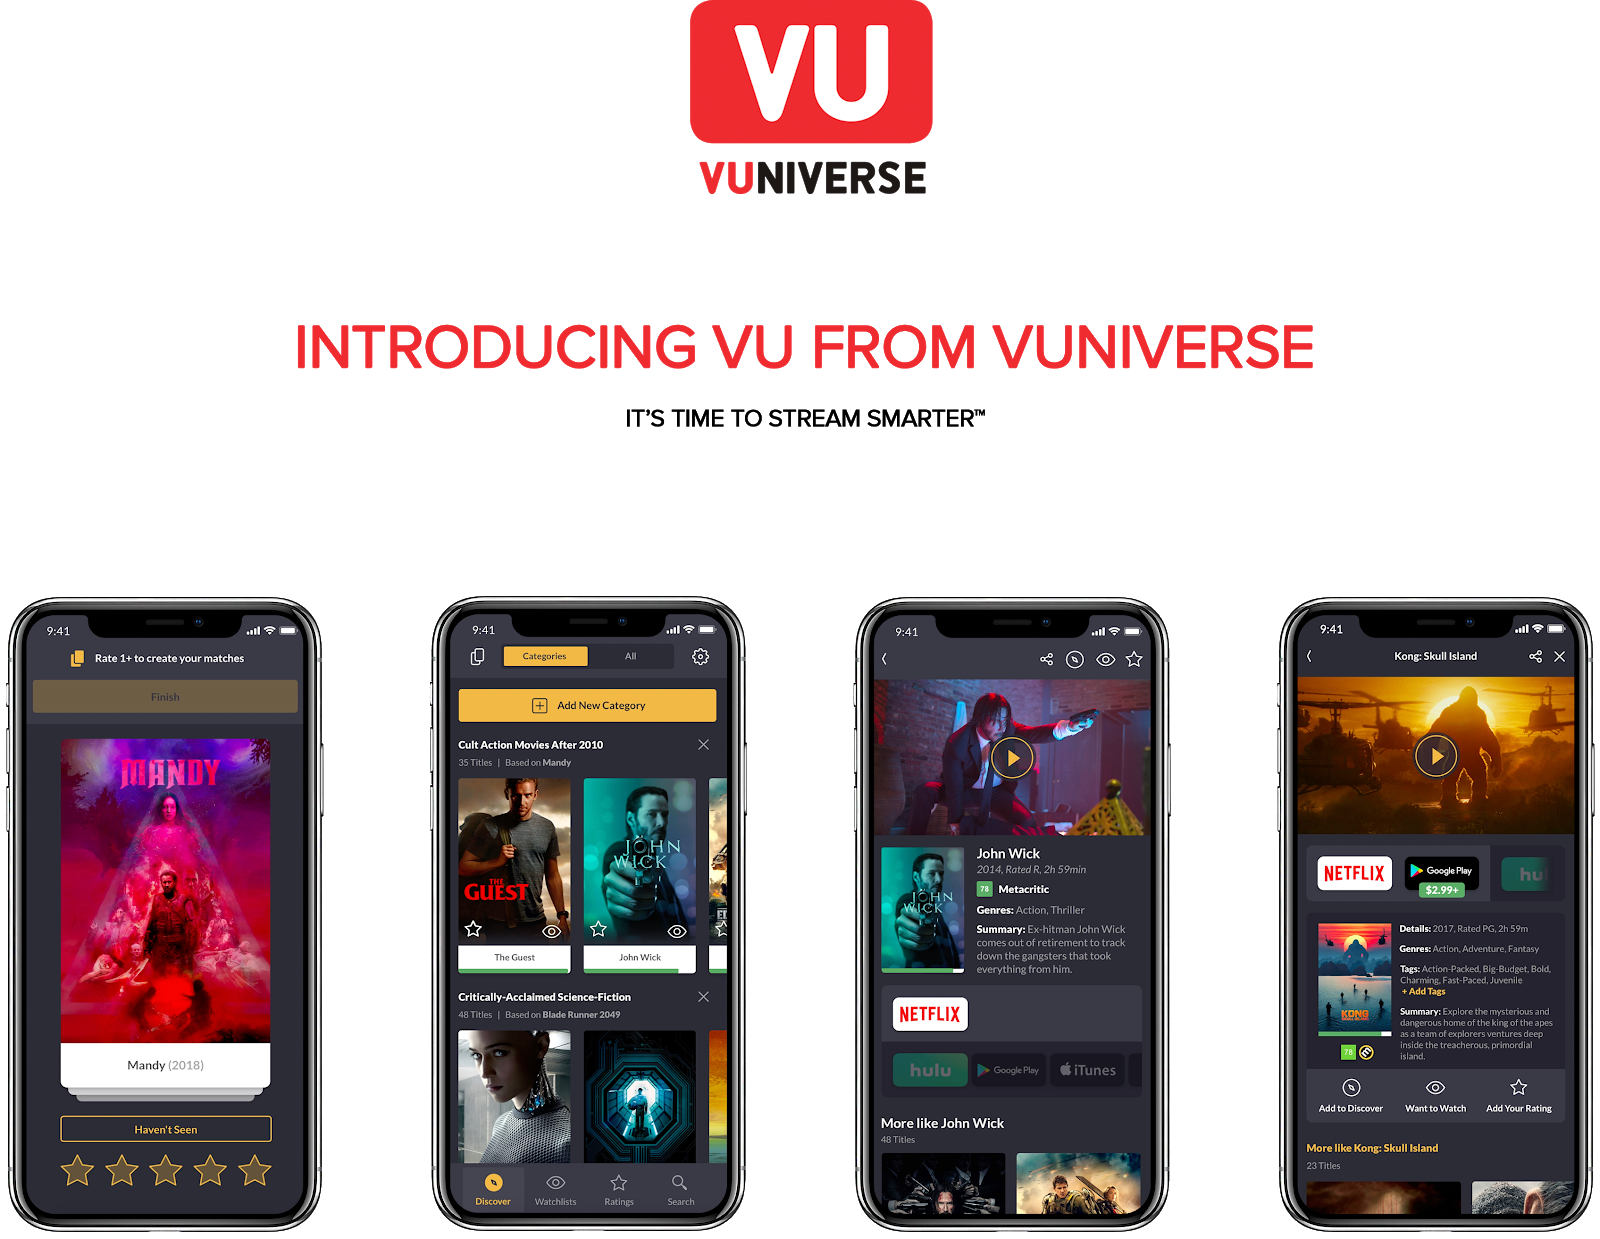 VU Streaming Media App